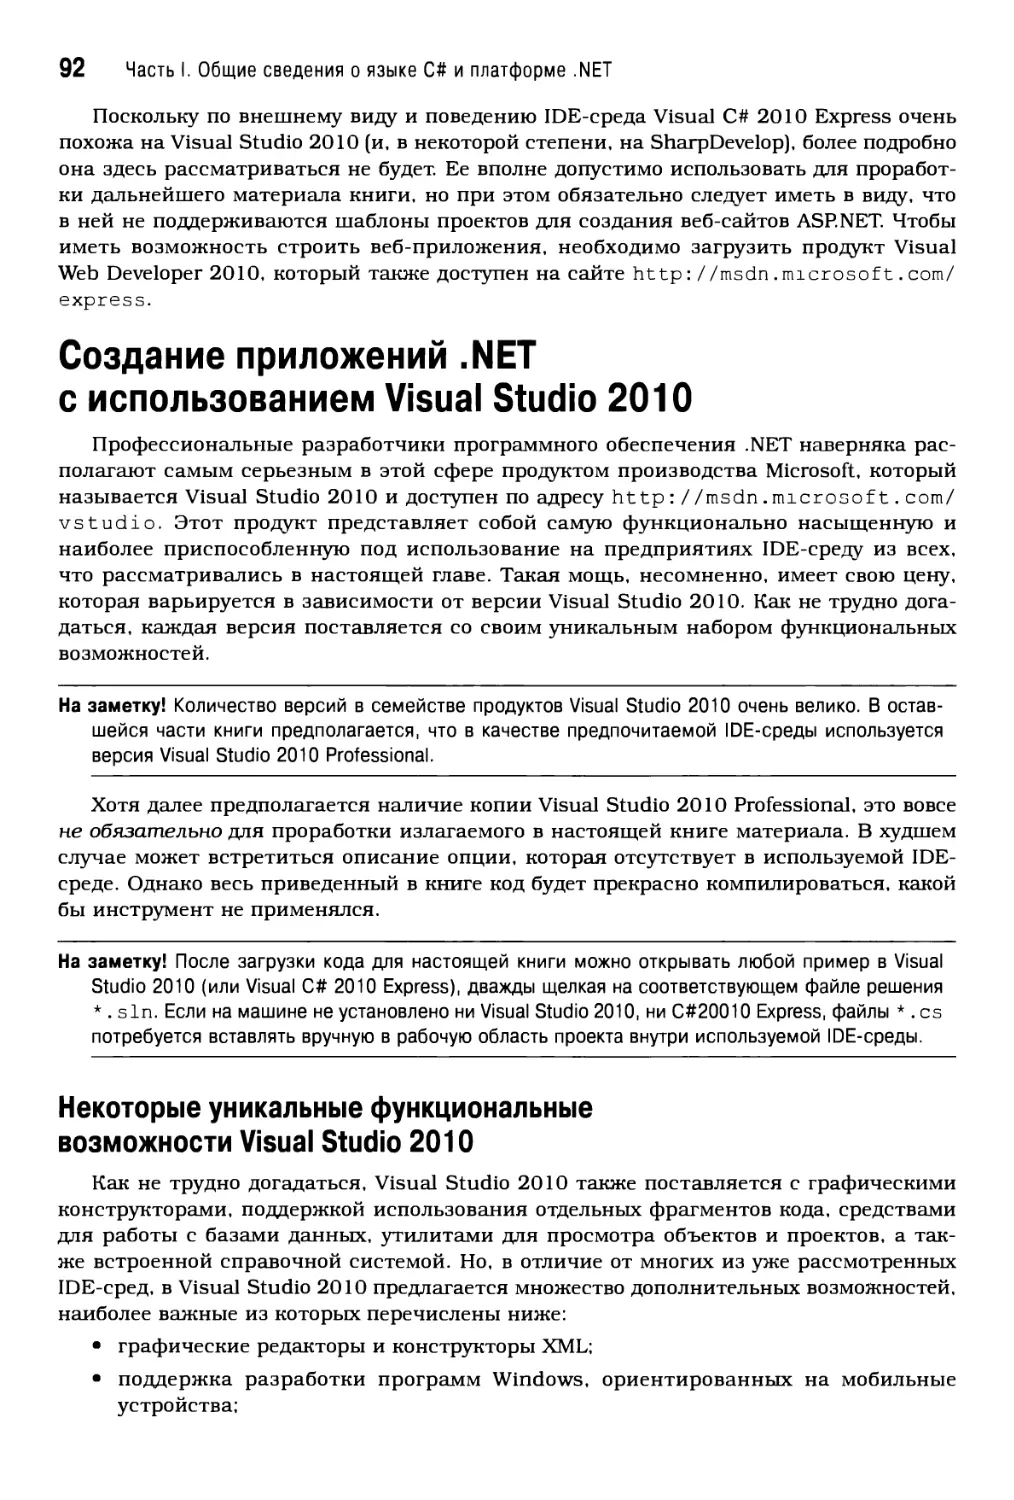 Создание приложений .NET с использованием Visual Studio 2010
Некоторые уникальные функциональные возможности Visual Studio 2010